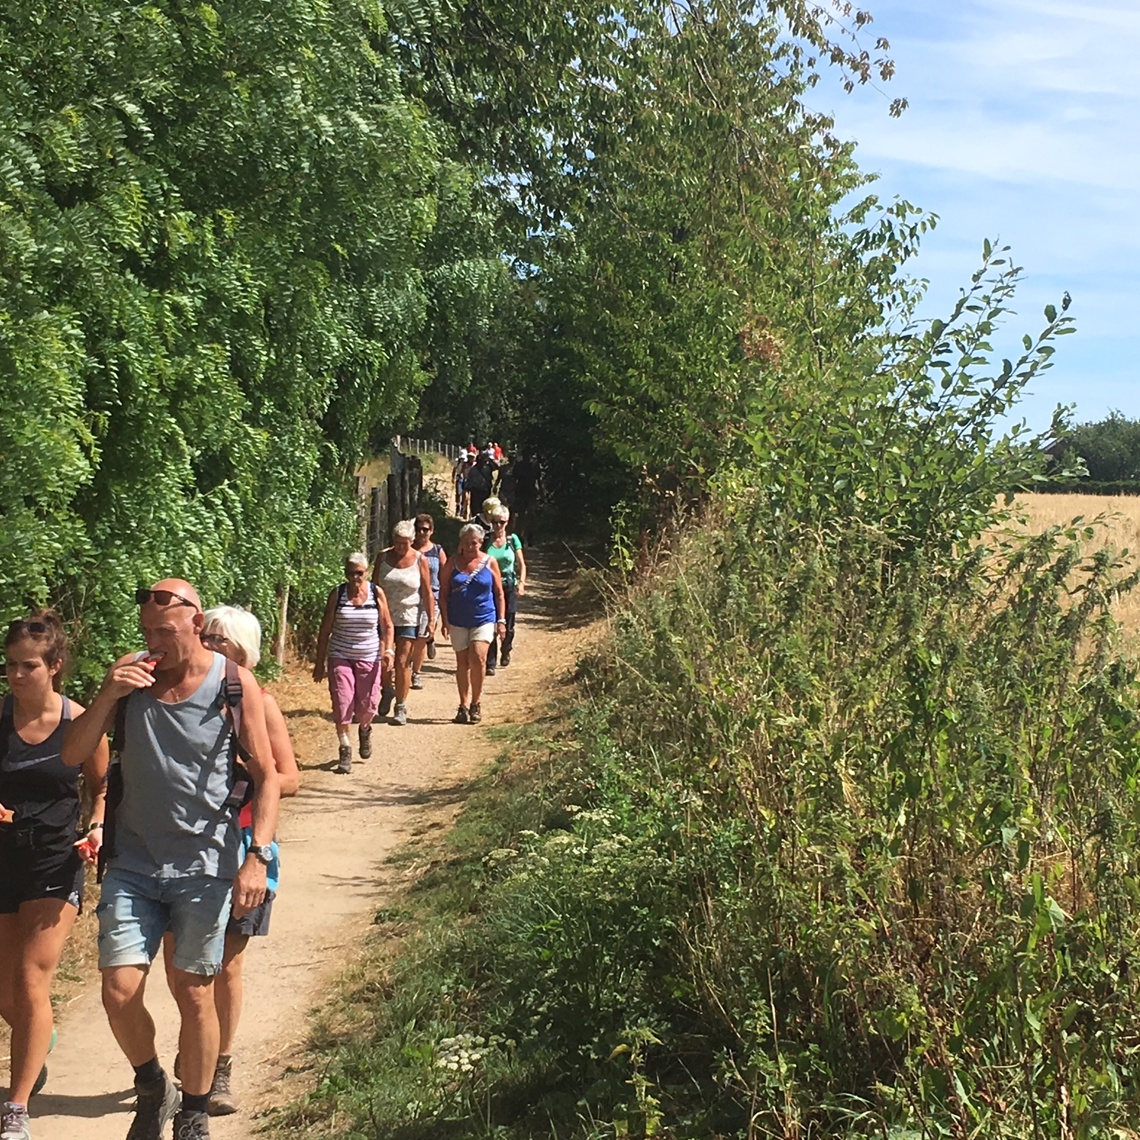 Wandelende mensen op pad aan de bosrand op een warme zomerdag